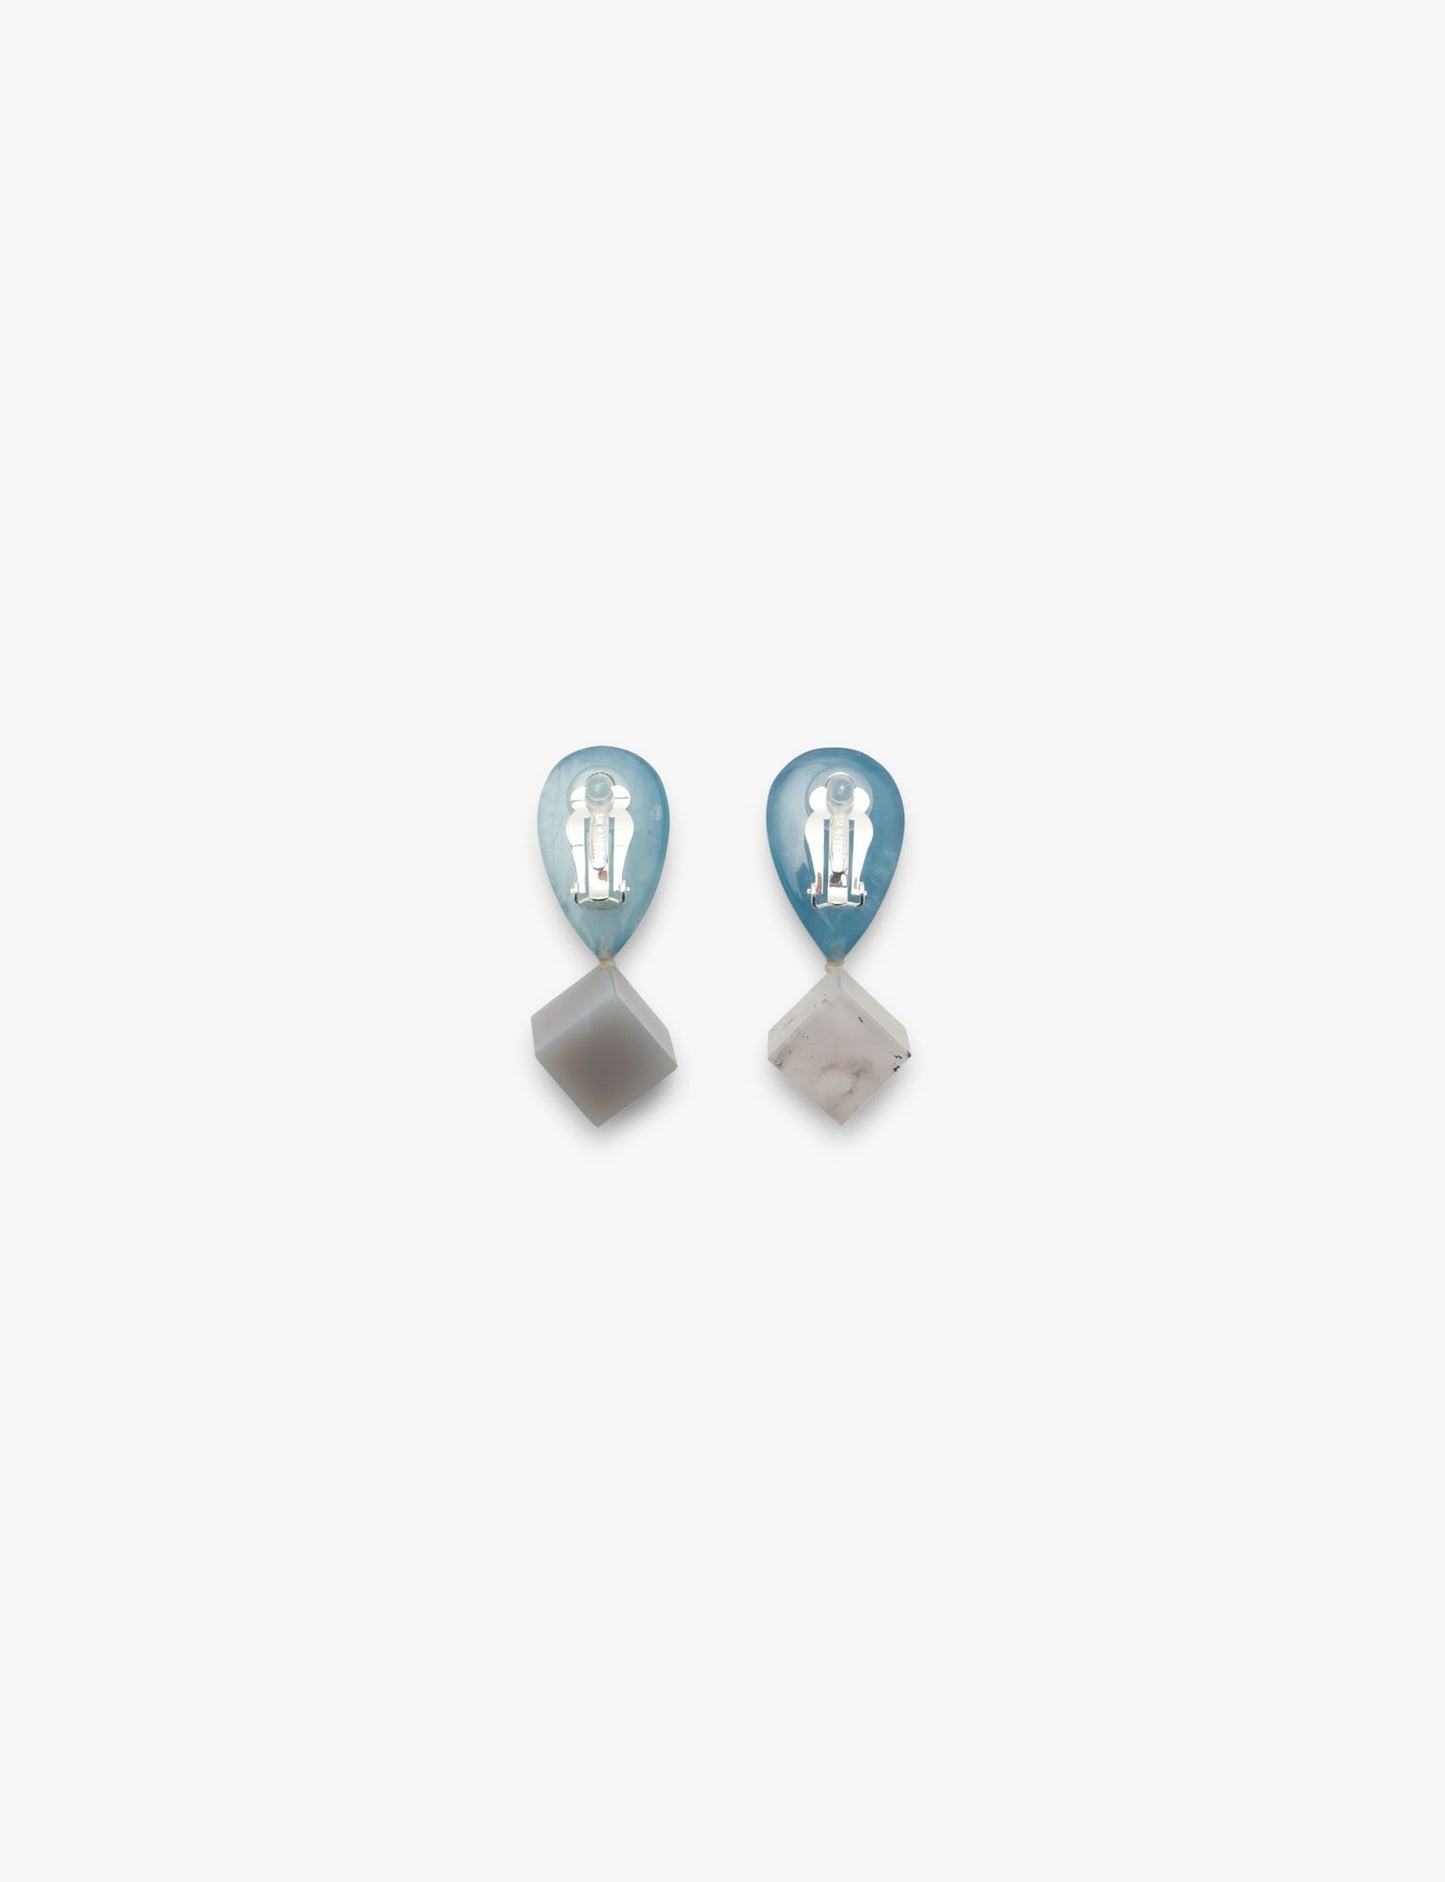 Earring: agate, aquamarine